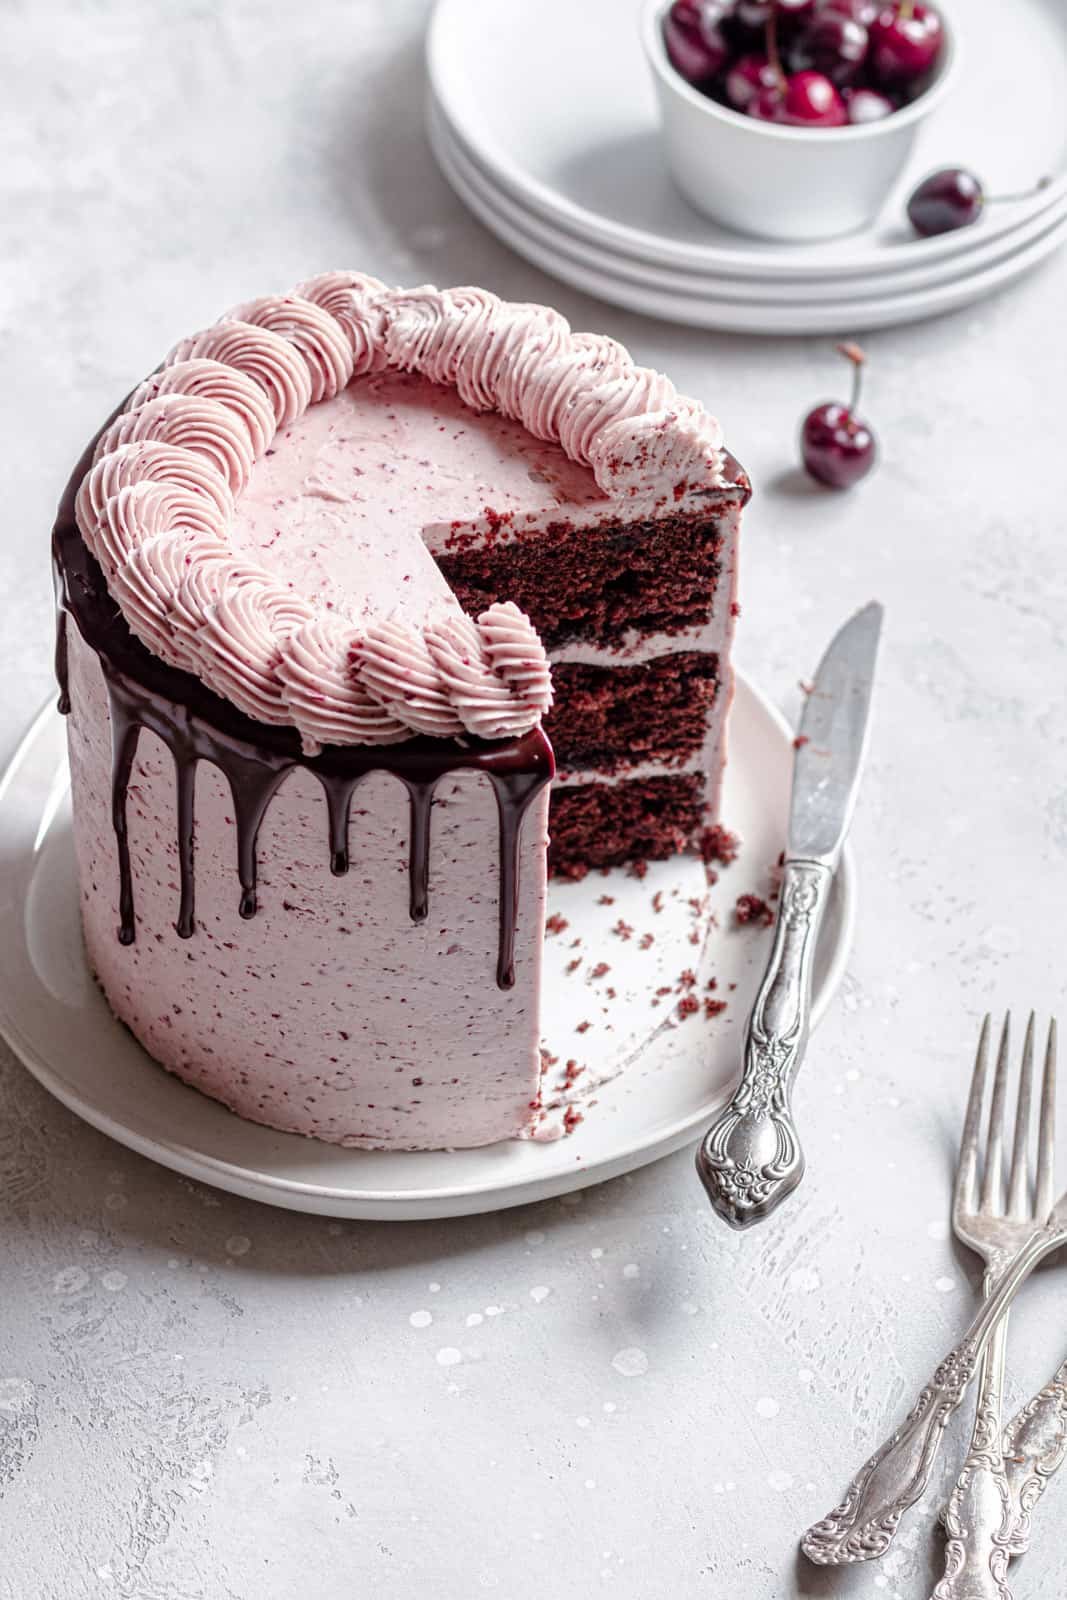 Chocolate cherry layer cake recipe